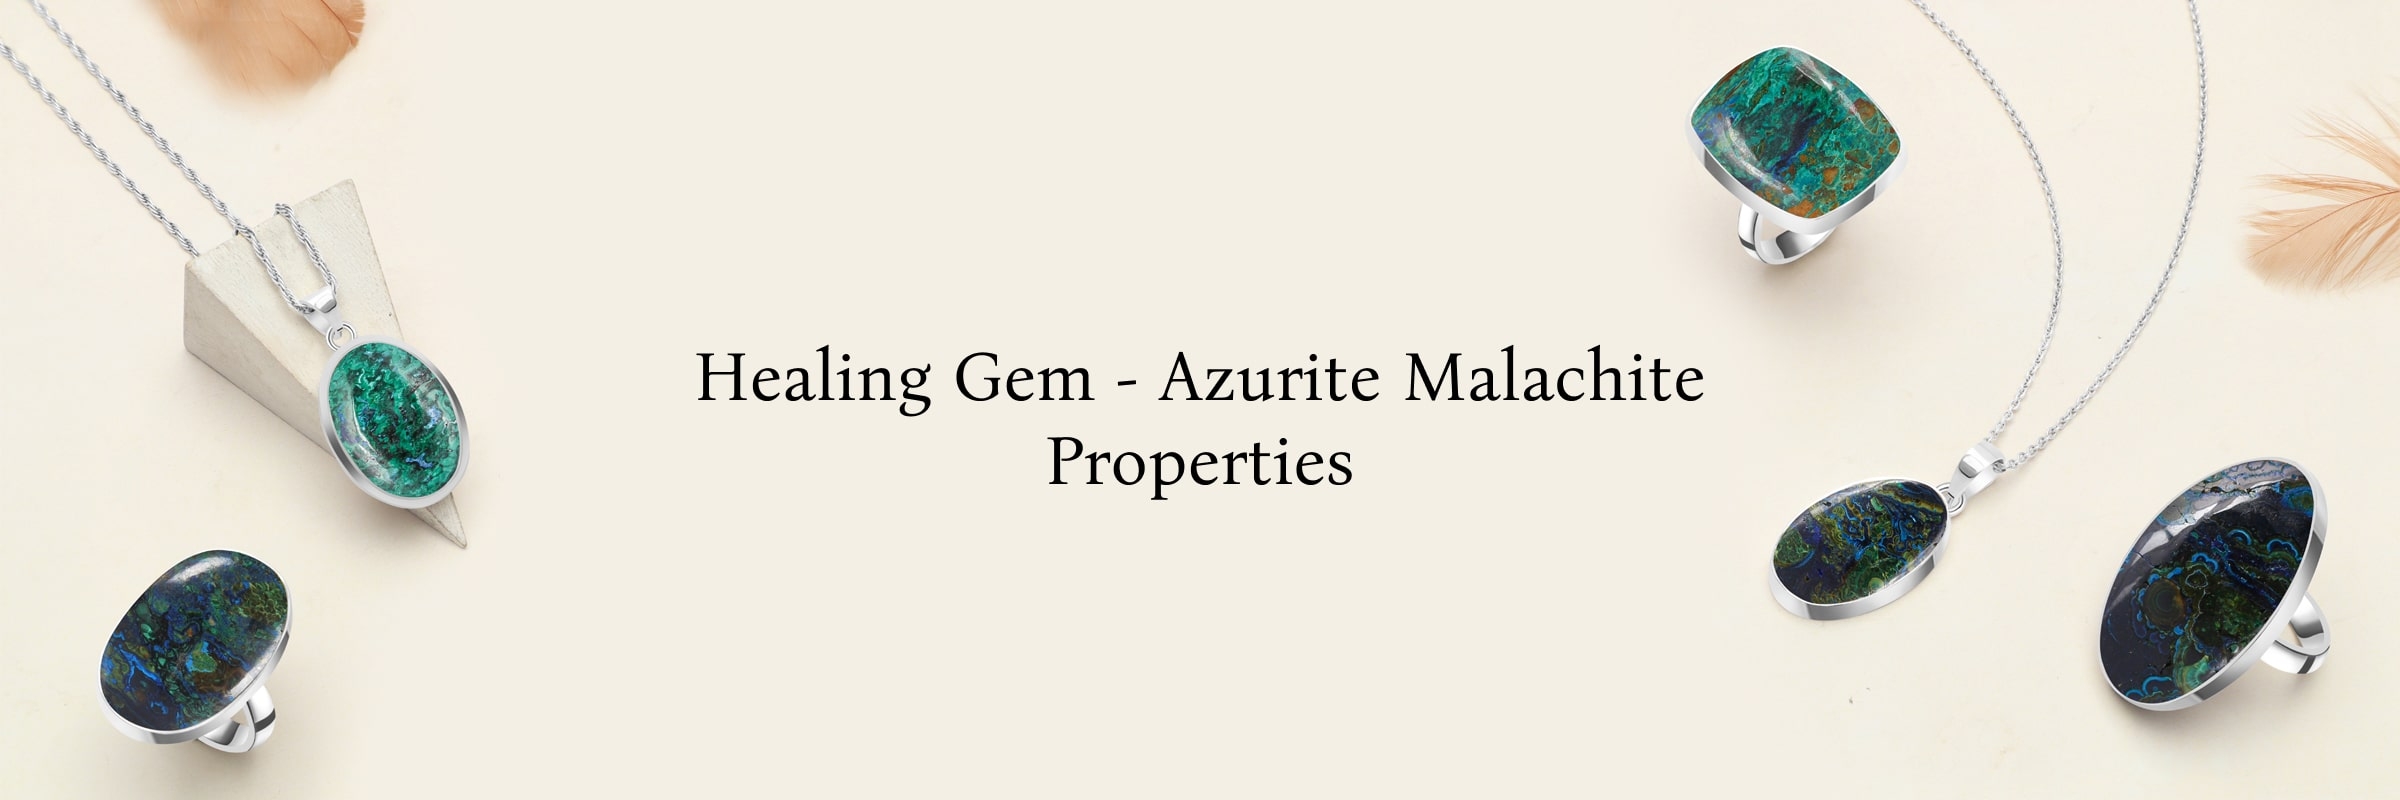 Healing Properties of Azurite Malachite